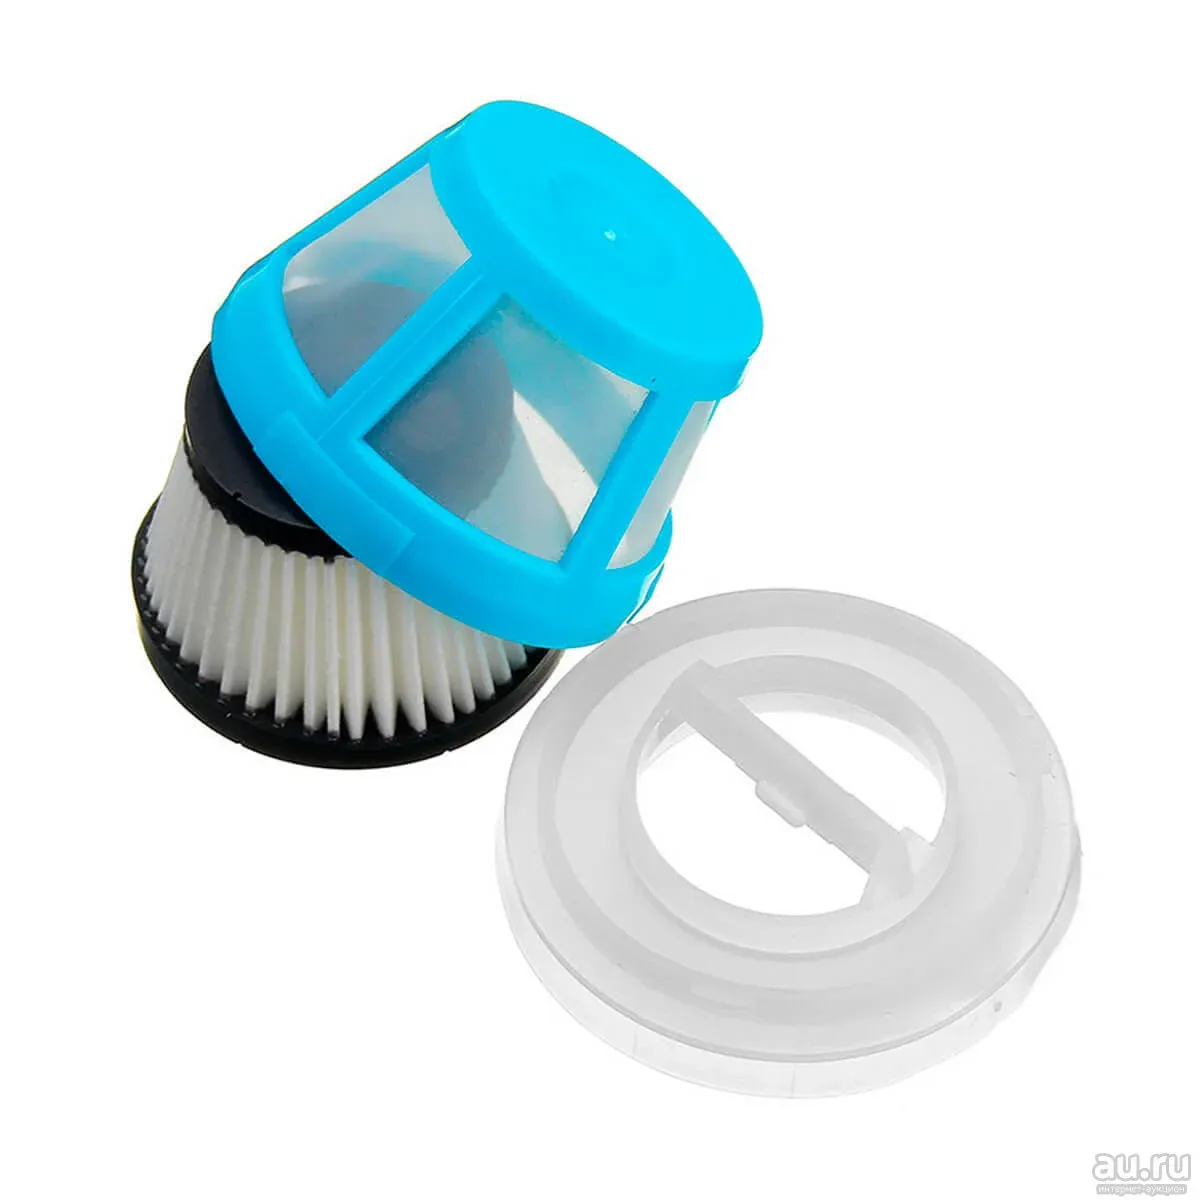 Фильтр для xiaomi vacuum cleaner. Xiaomi Cleanfly Portable Vacuum Cleaner фильтр. Пылевой фильтр для пылесоса Xiaomi Cleanfly Portable Vacuum Cleaner. Фильтр Coclean HEPA. Фильтры для автомобильного пылесоса ксяоми.